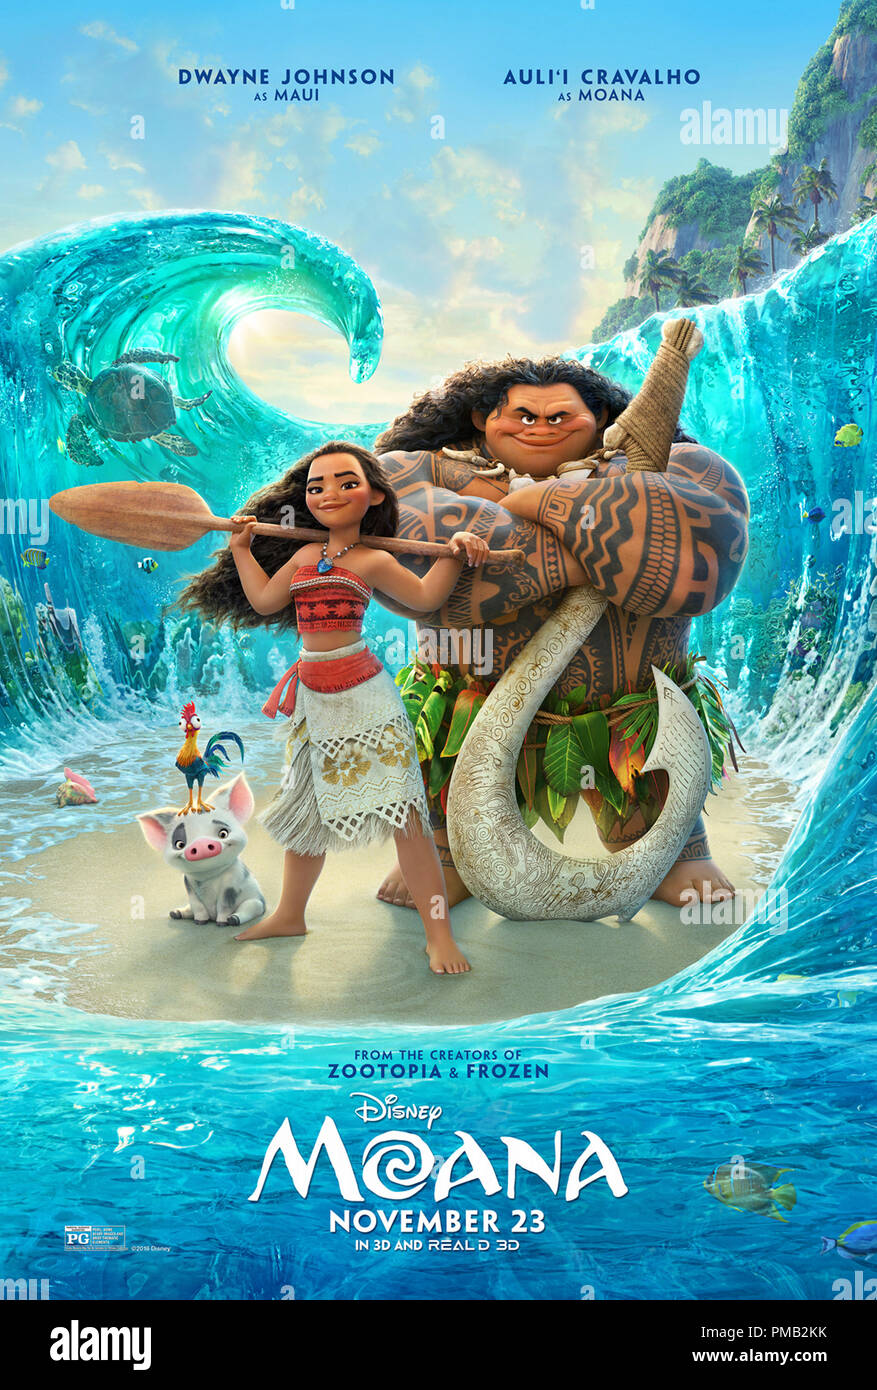 Maui (voix de Dwayne Johnson) et Moana (voix de Auli'je Cravalho) 'Moana' (2016) Affiche de Disney Banque D'Images